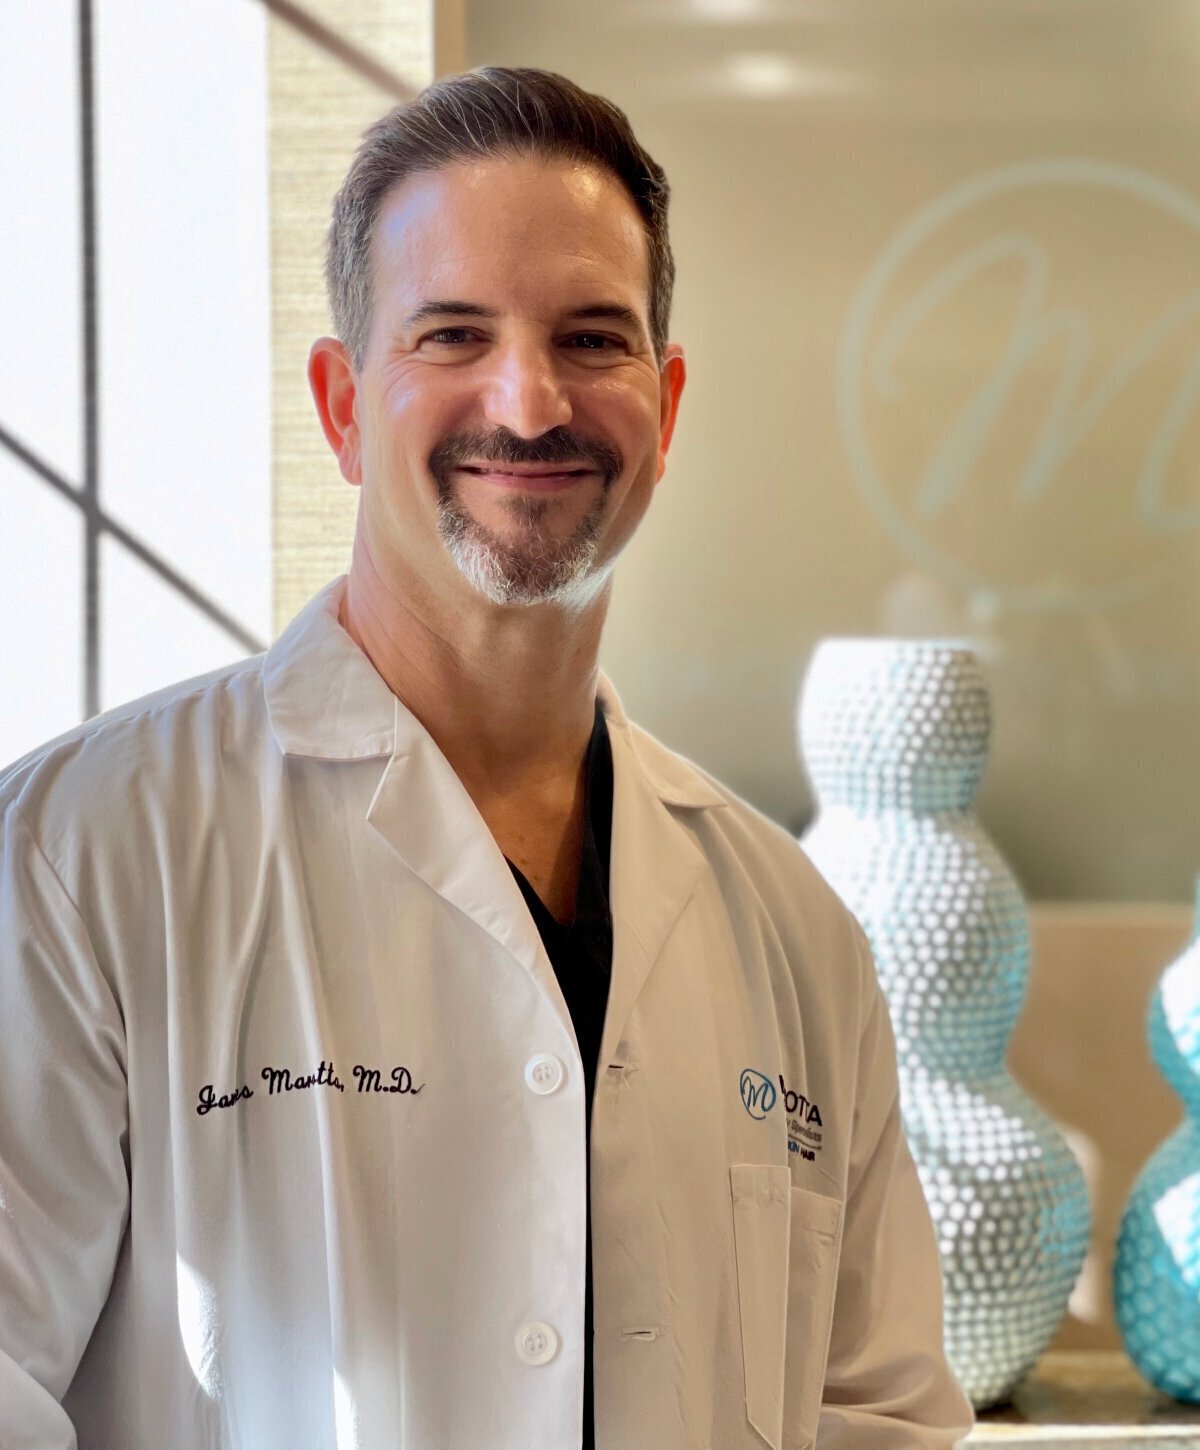 Dr. James Marotta - Long Island Hair Restoration Specialist